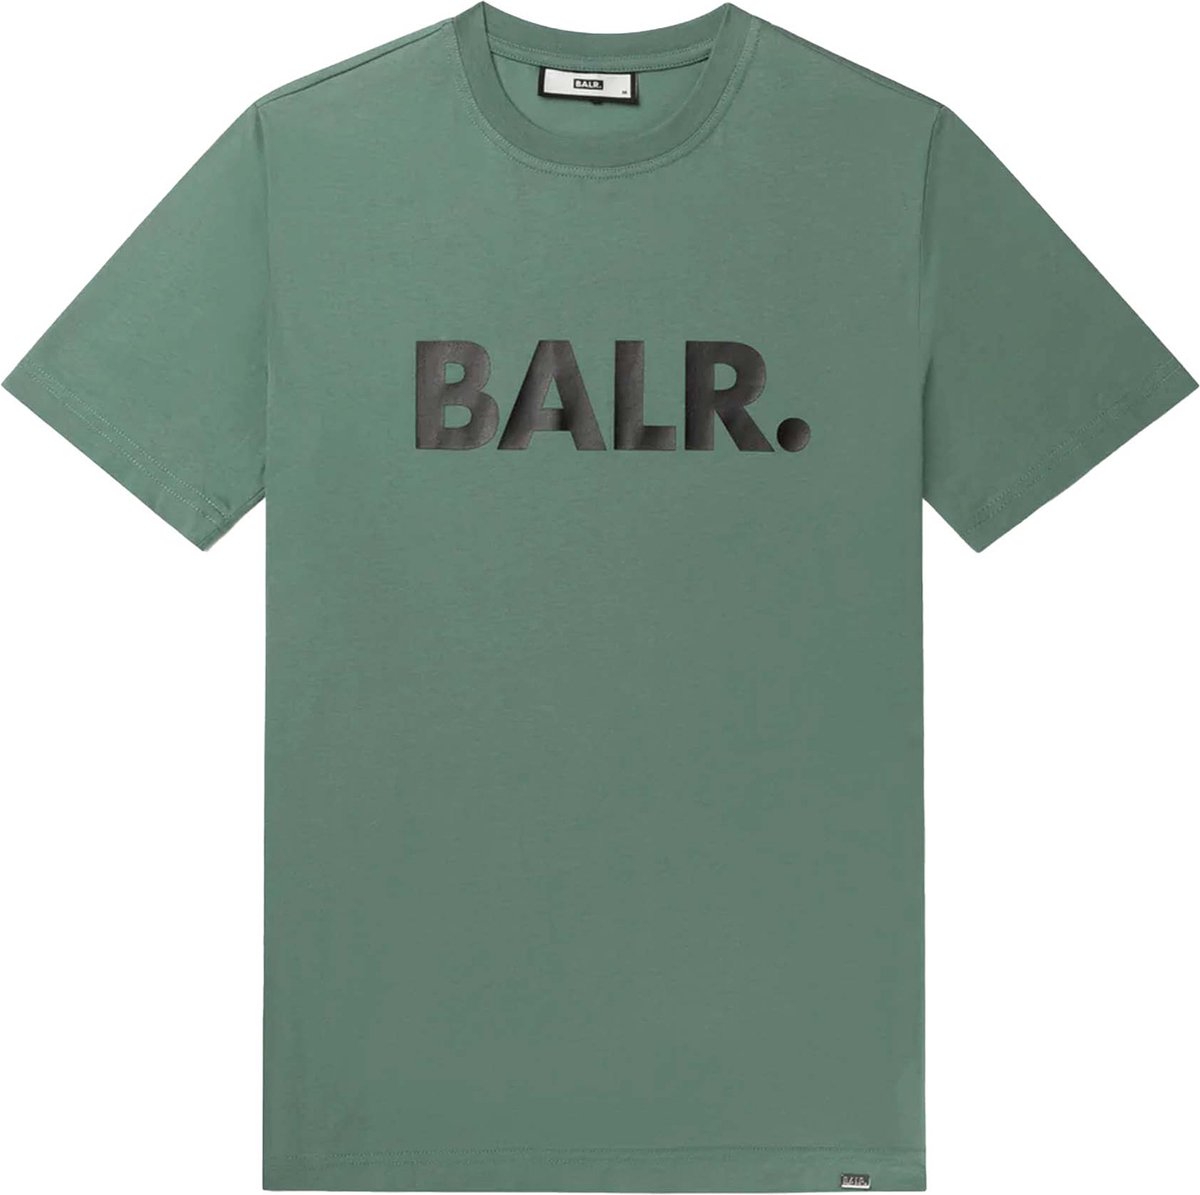 BALR. Shirt Groen Katoen maat L Brand straight t-shirts groen